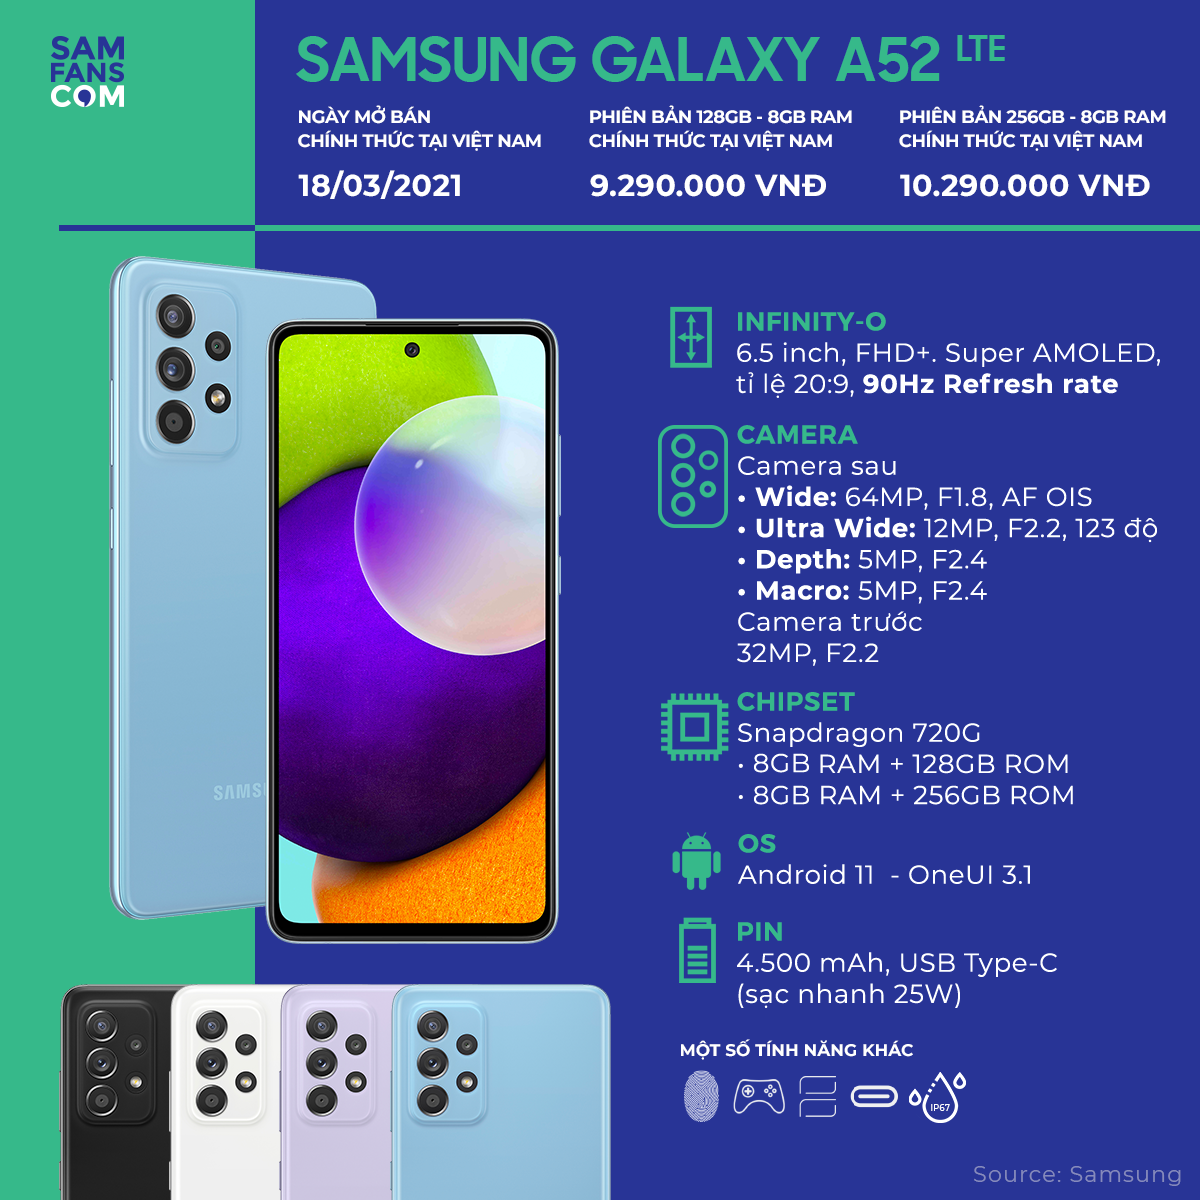 4 lý do bạn không nên mua Galaxy A52 - 1617160403